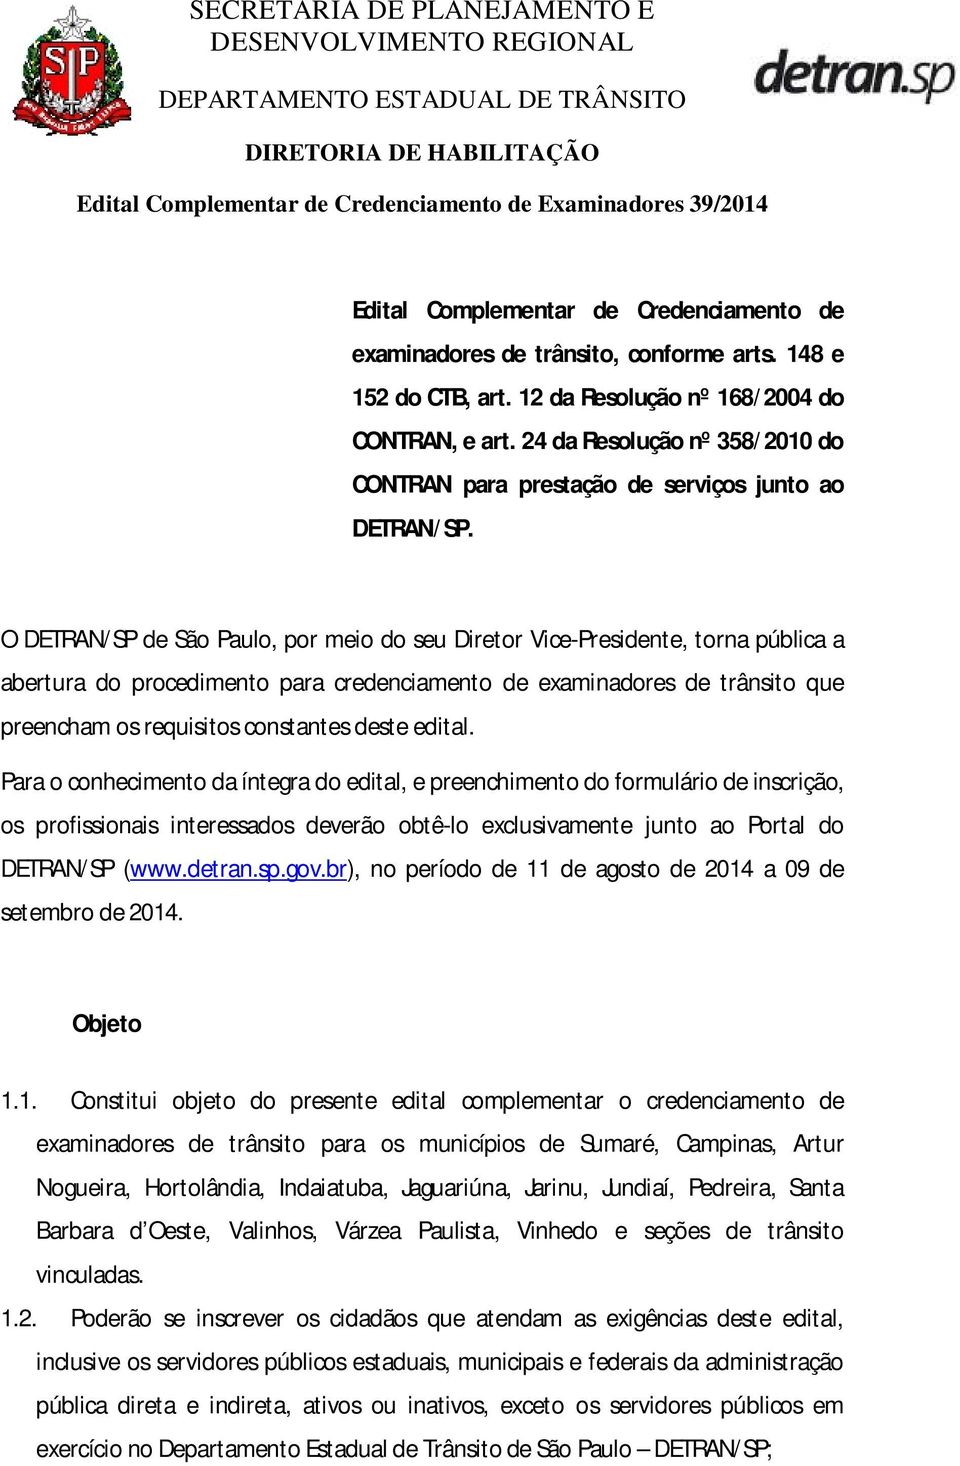 O DETRAN/SP de São Paulo, por meio do seu Diretor Vice-Presidente, torna pública a abertura do procedimento para credenciamento de examinadores de trânsito que preencham os requisitos constantes